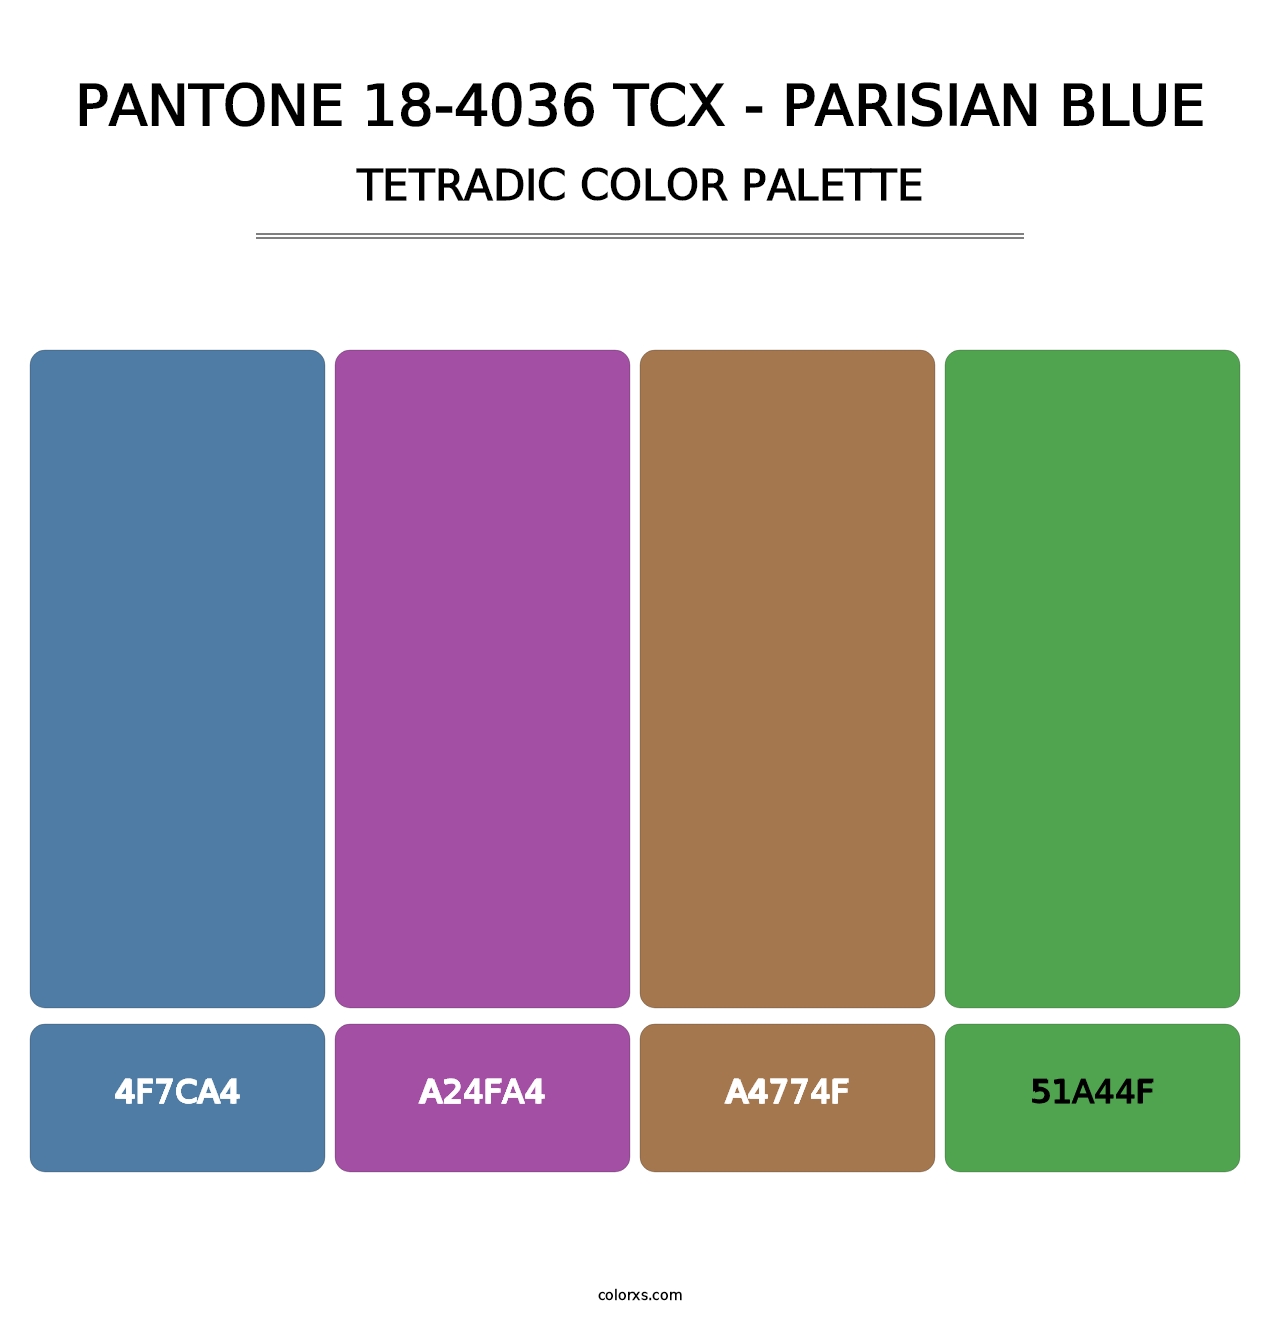 PANTONE 18-4036 TCX - Parisian Blue - Tetradic Color Palette